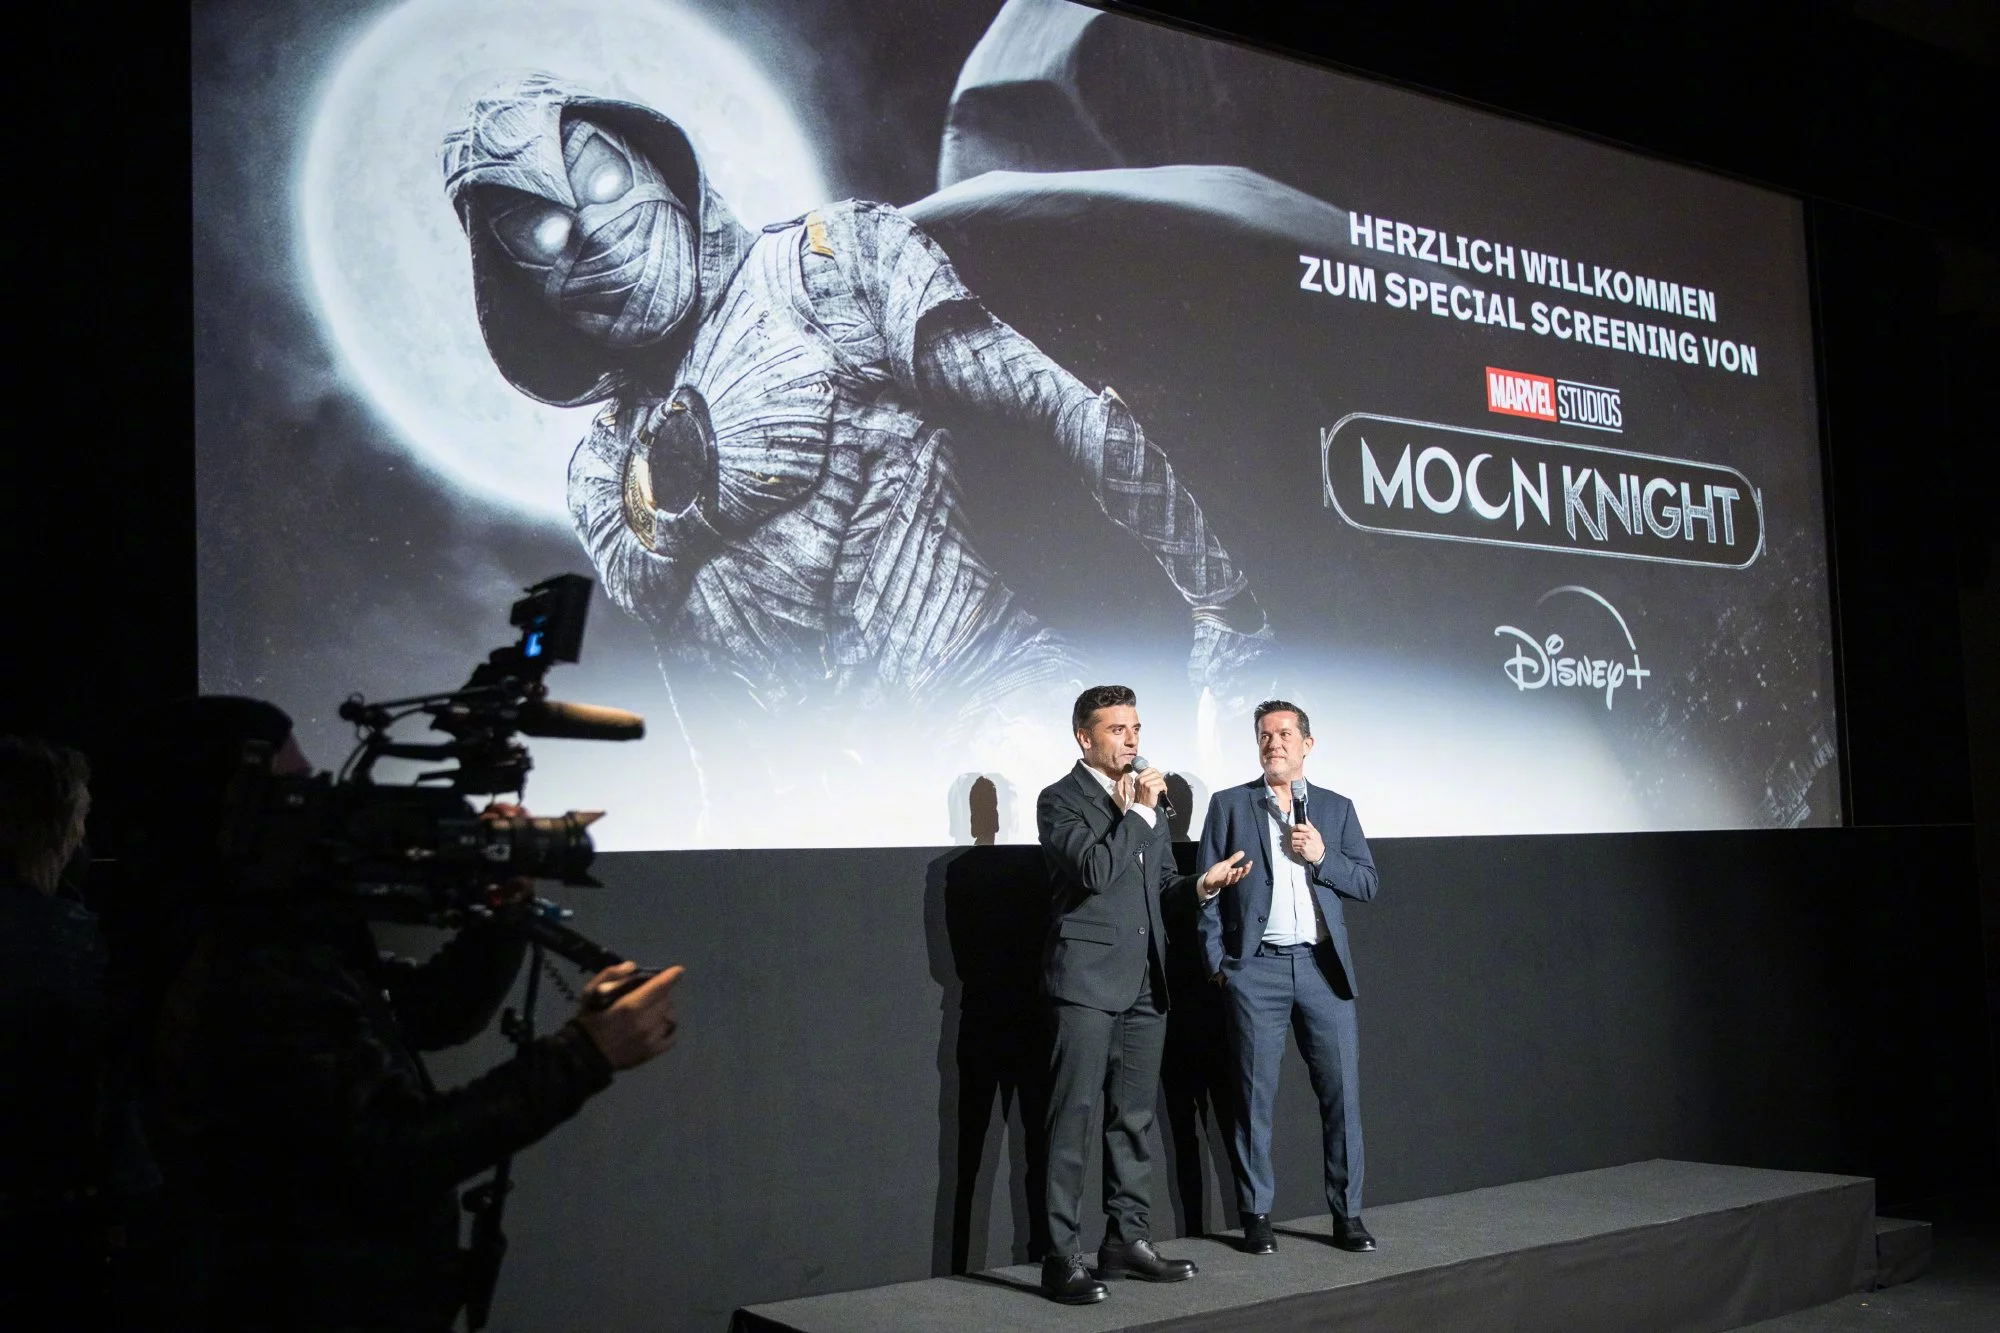 Oscar Isaac attends the Berlin screening of 'Moonlight Knight' ​​​